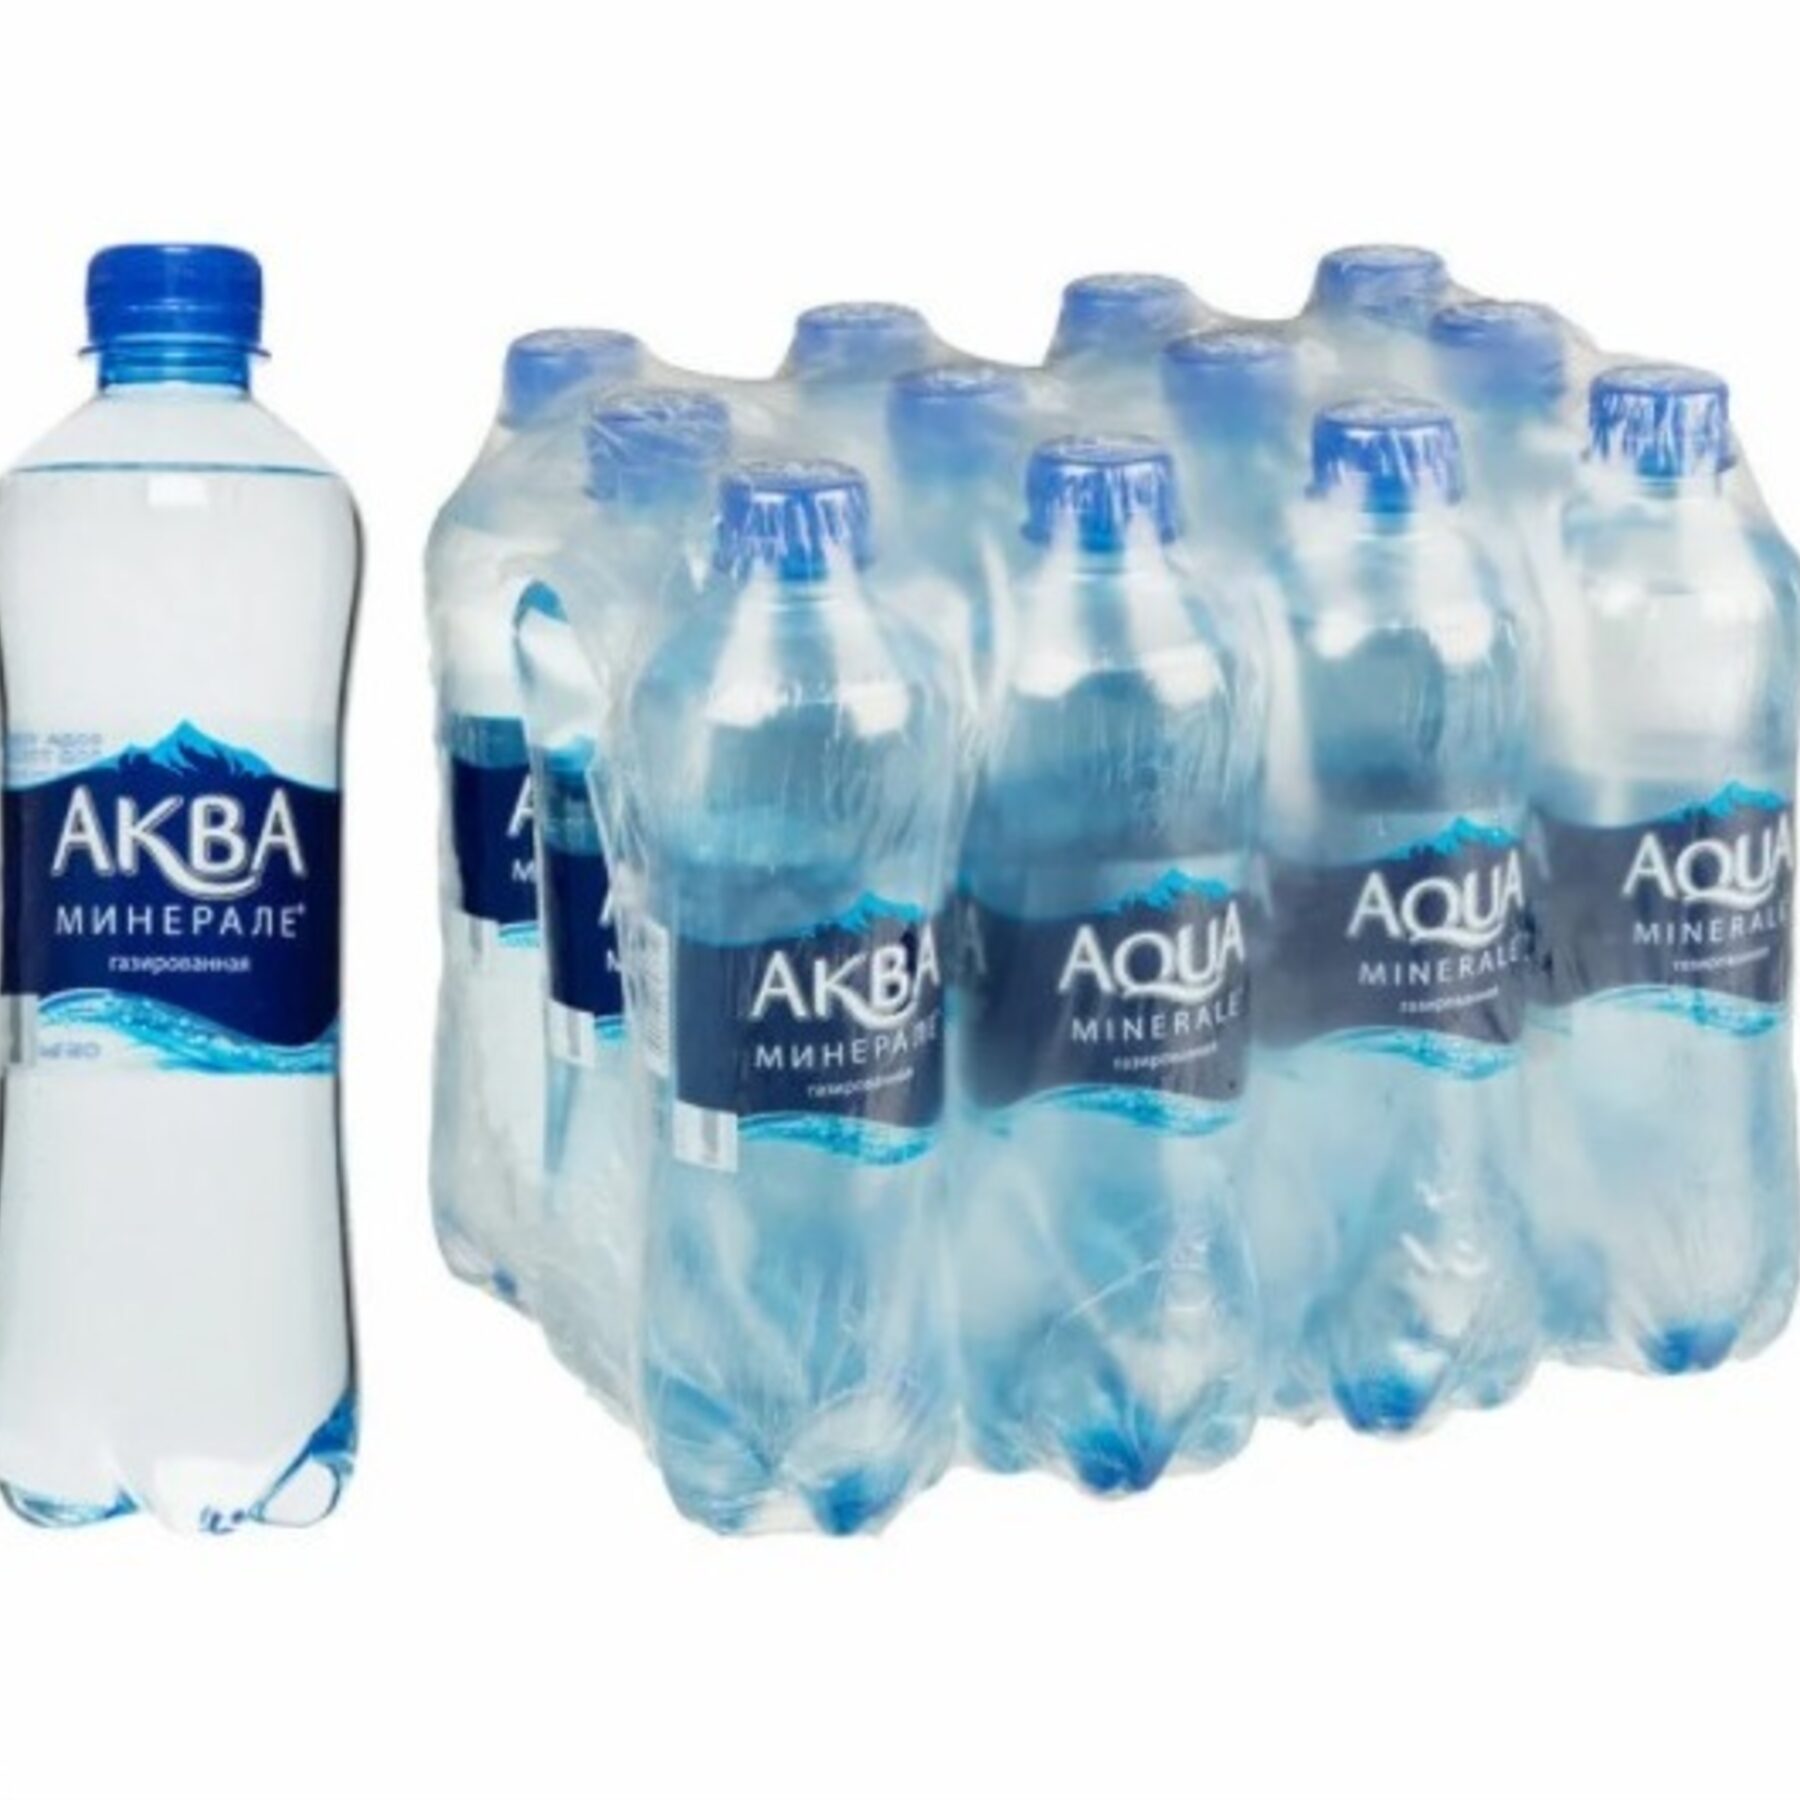 Вода газированная 0 5. Aqua minerale вода питьевая ГАЗ 0.5Л. Аква минер ГАЗ 0.5. Aqua minerale вода 0.5. Вода Аква Минерале газированная 0,5л.